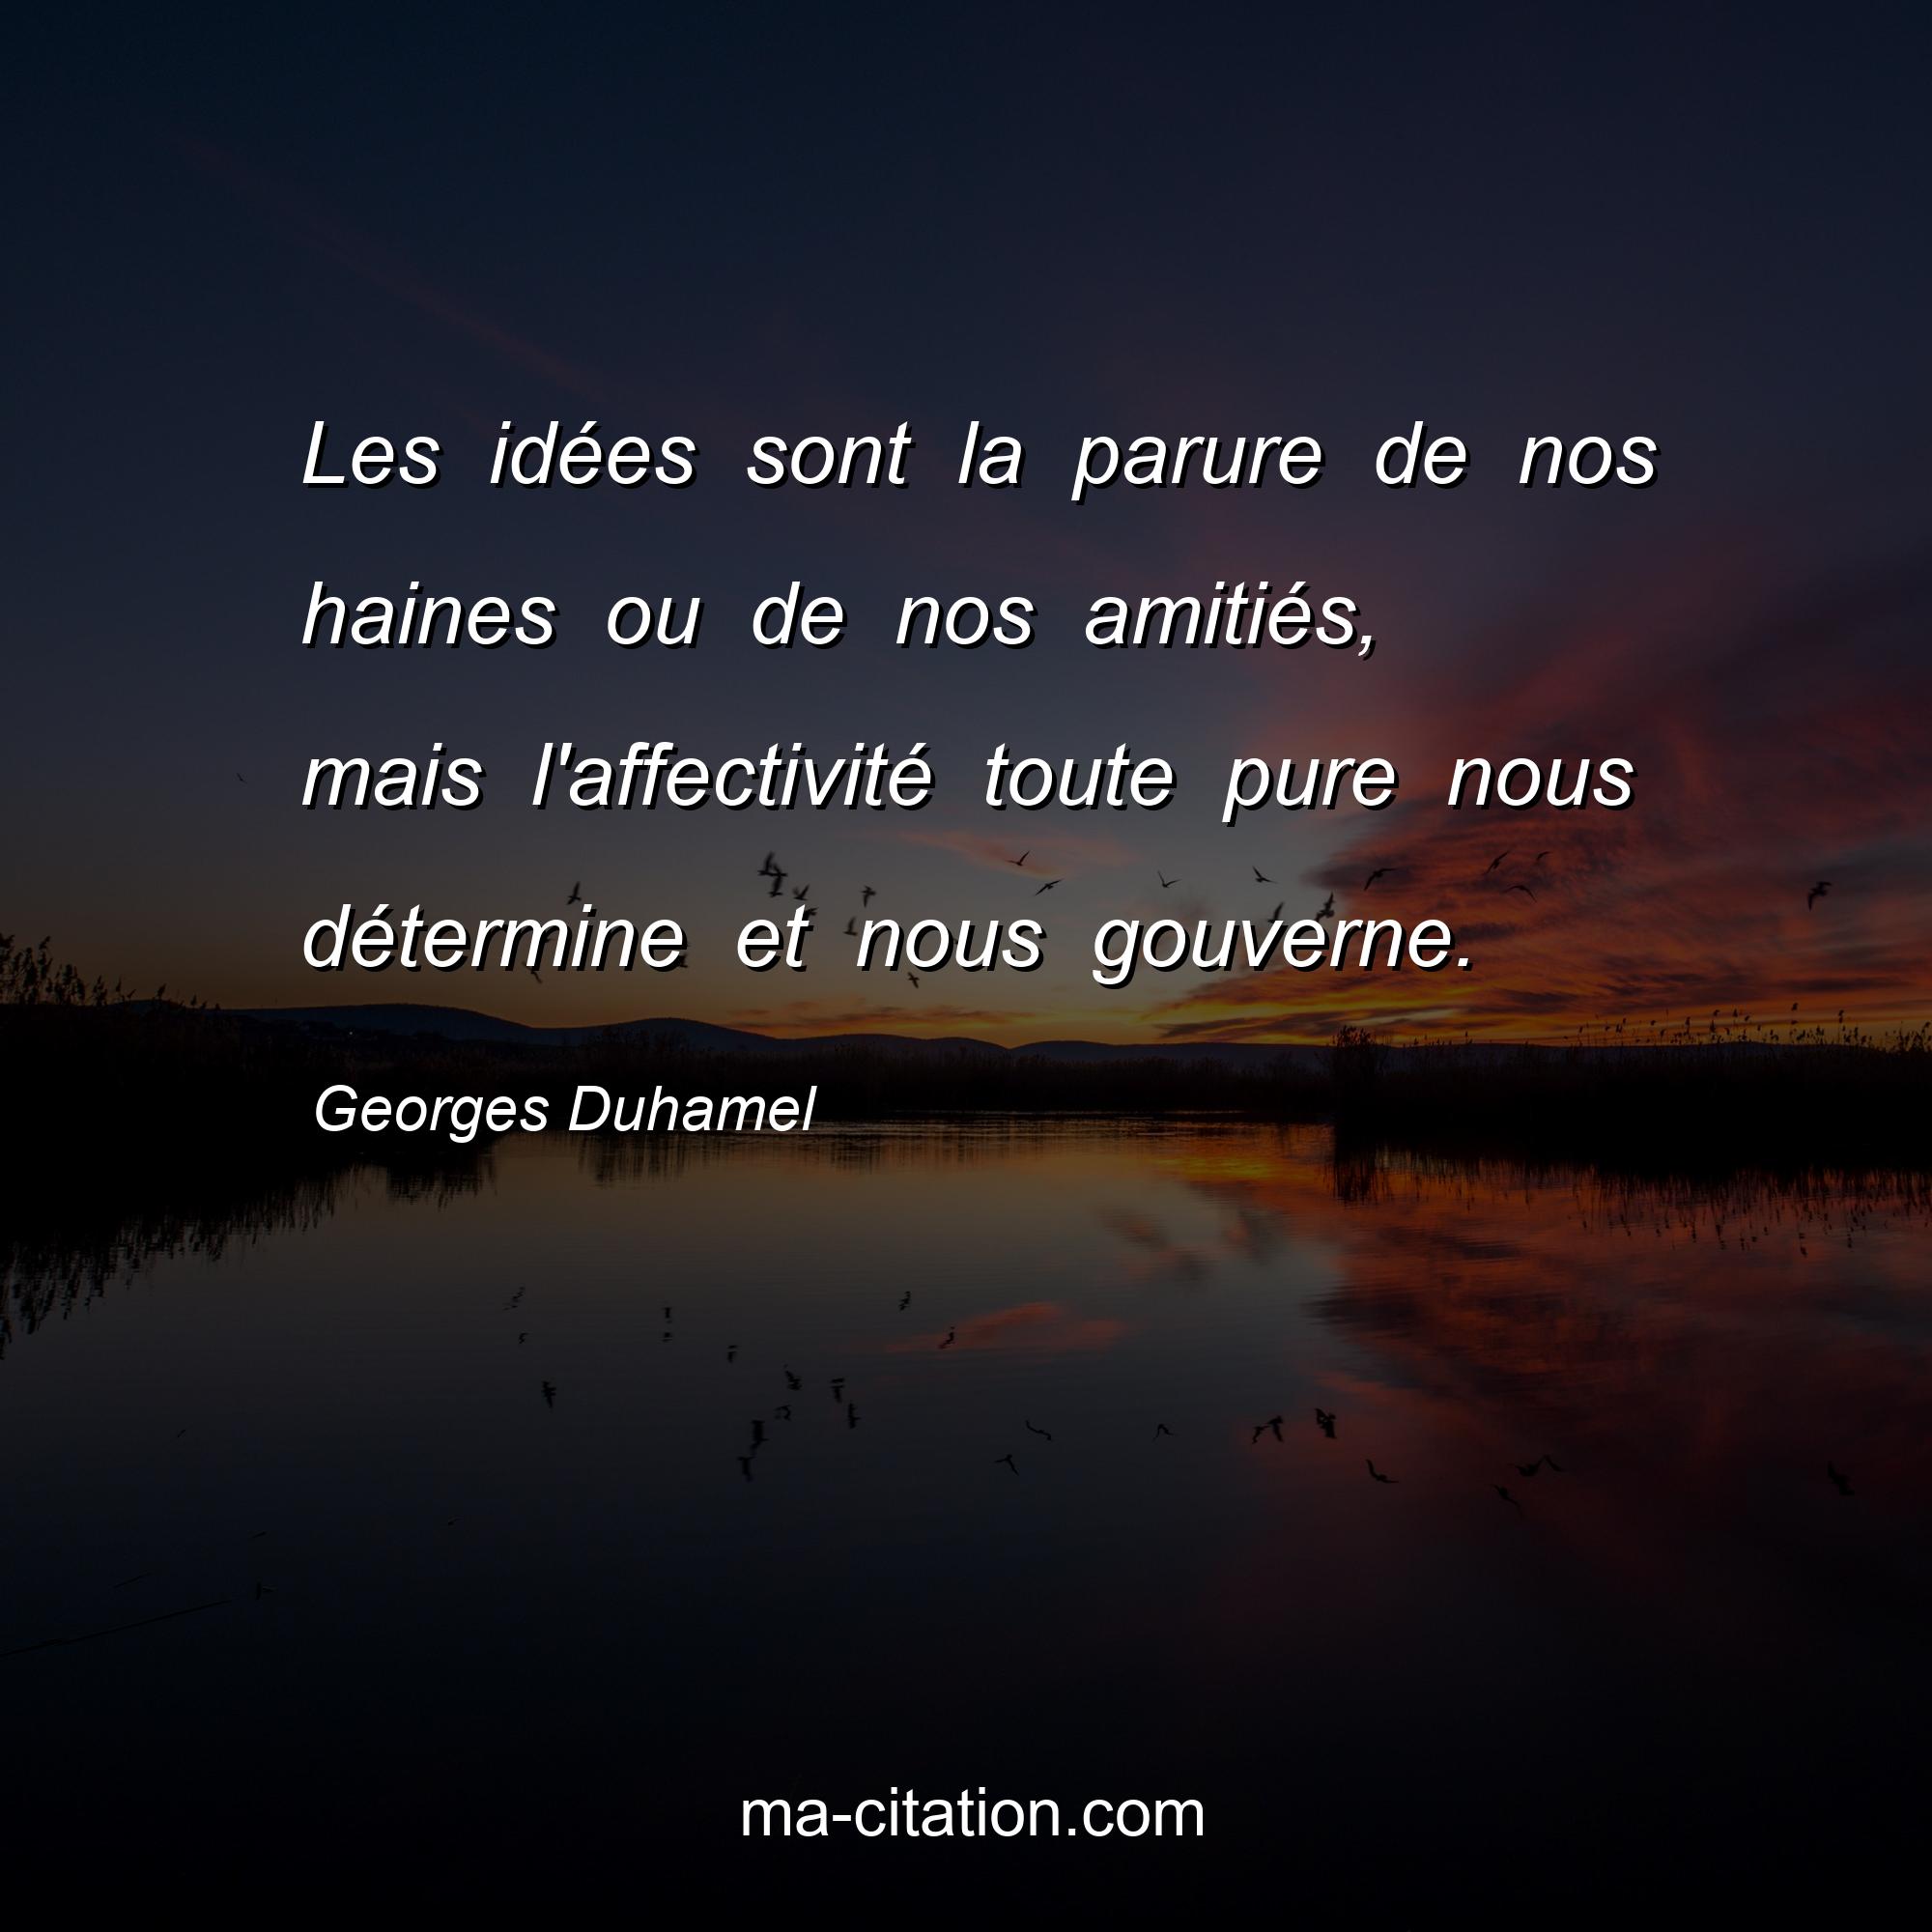 Georges Duhamel : Les idées sont la parure de nos haines ou de nos amitiés, mais l'affectivité toute pure nous détermine et nous gouverne.